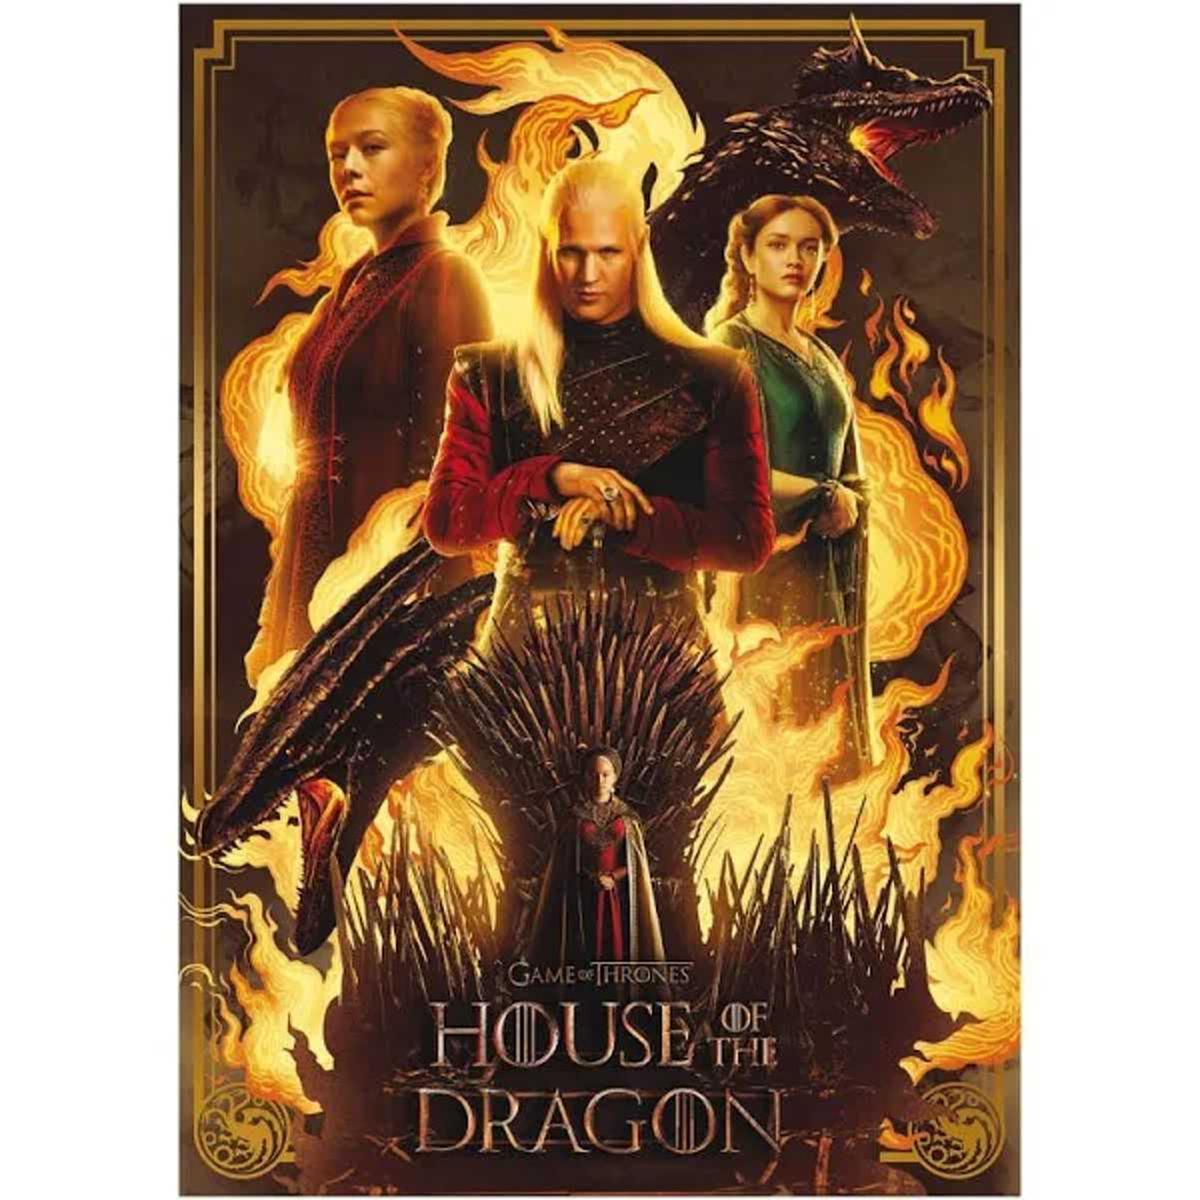 House of the Dragon” tem (algumas) qualidades, mas não